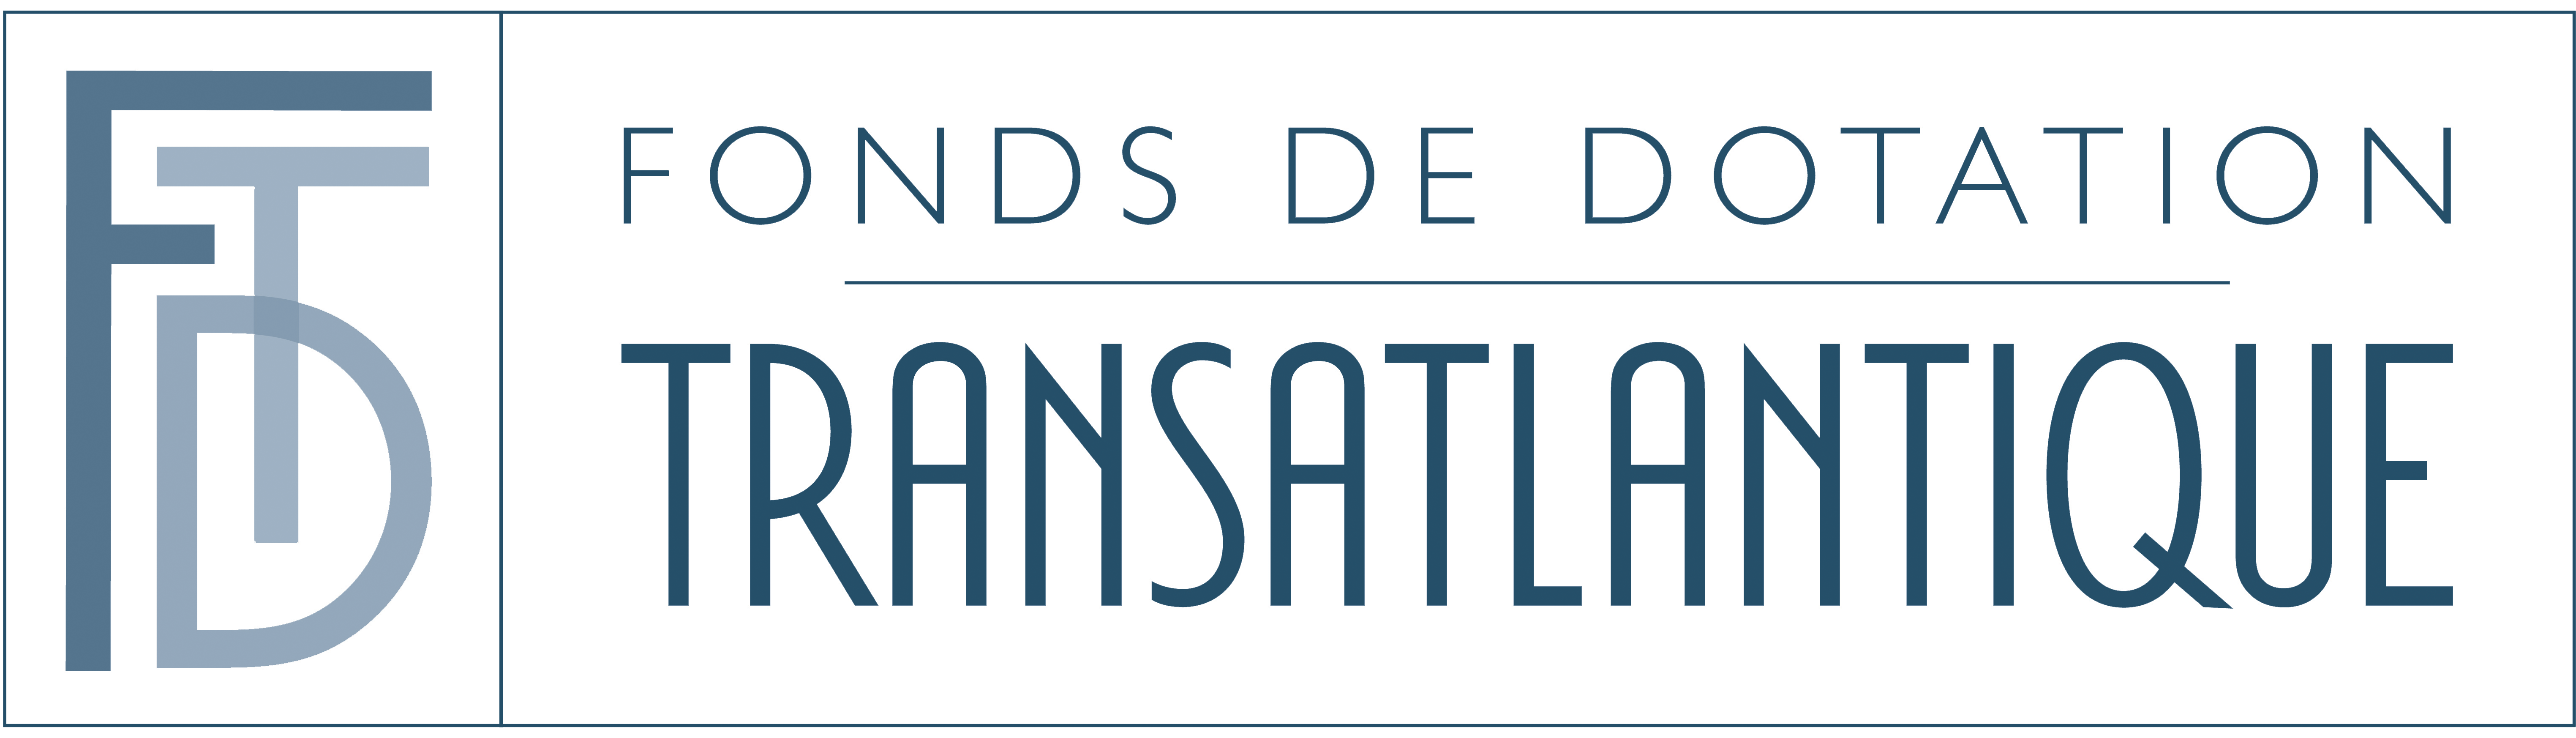 Logo fonds de dotation transatlantique